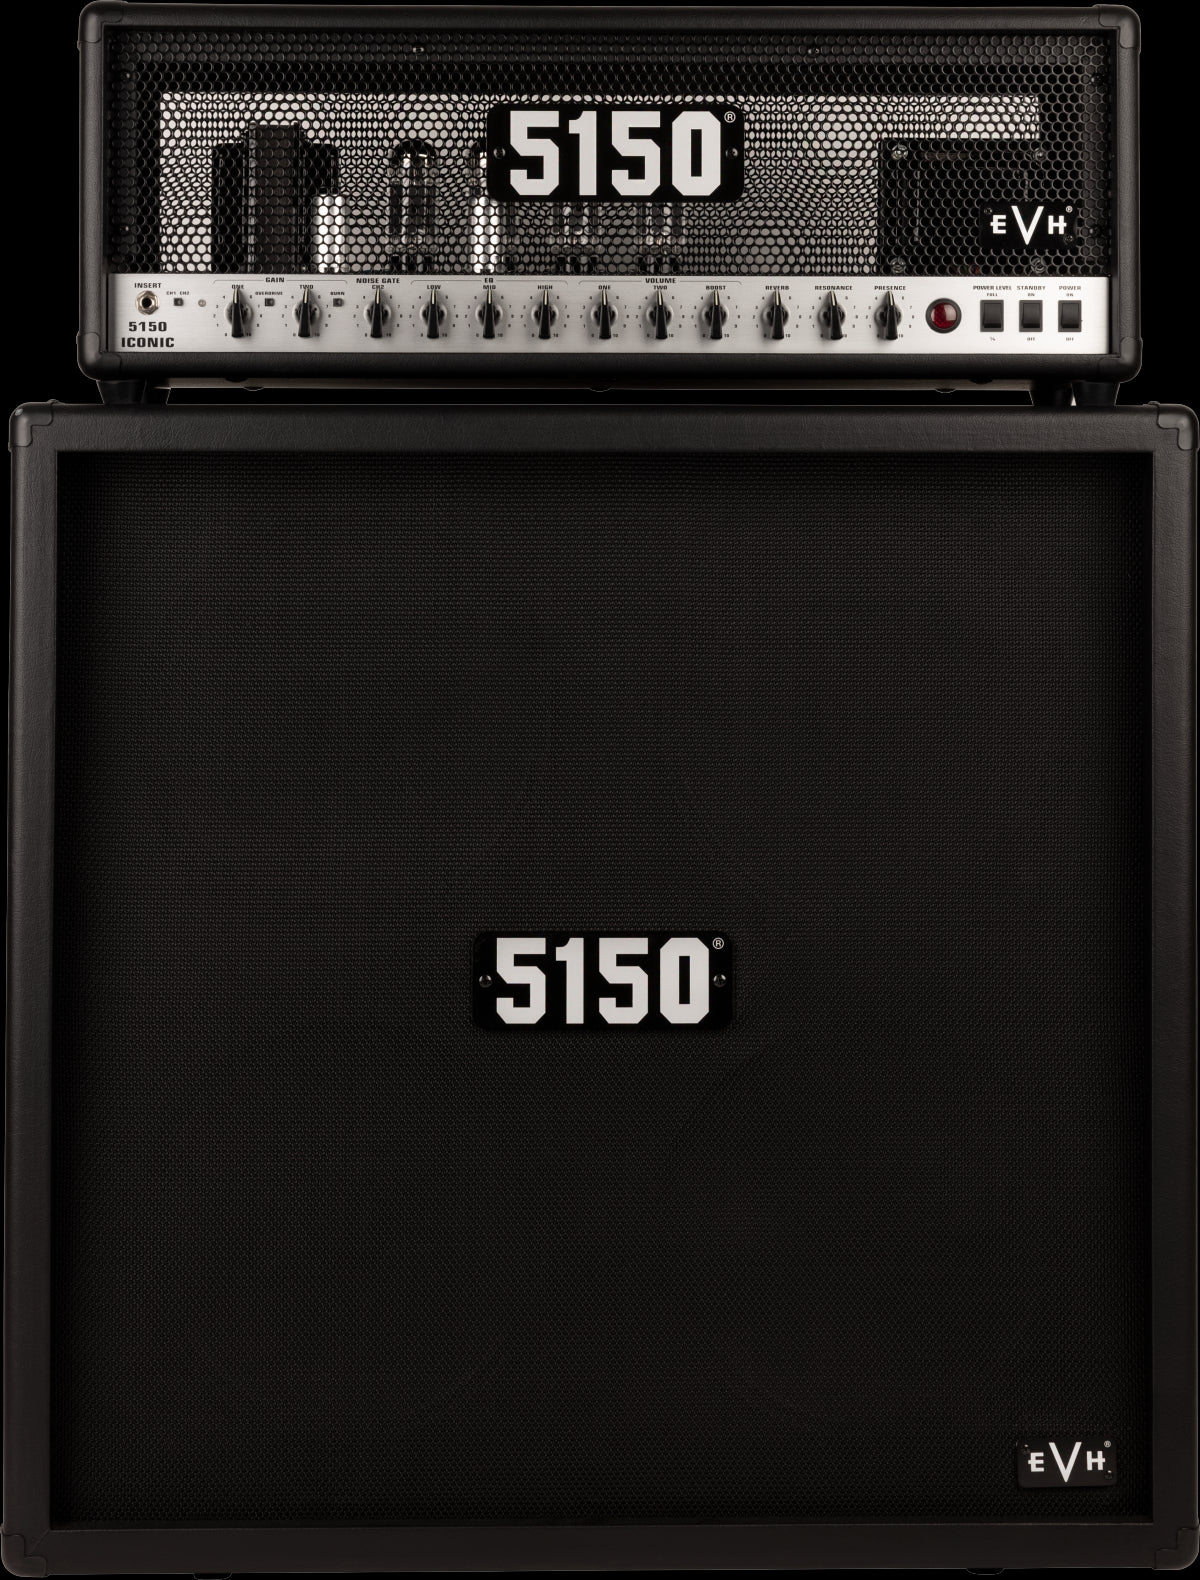 Black　Cabinet　Sound　EVH　Perth　Australia　5150　Series　At　Iconic　4x12　Centre